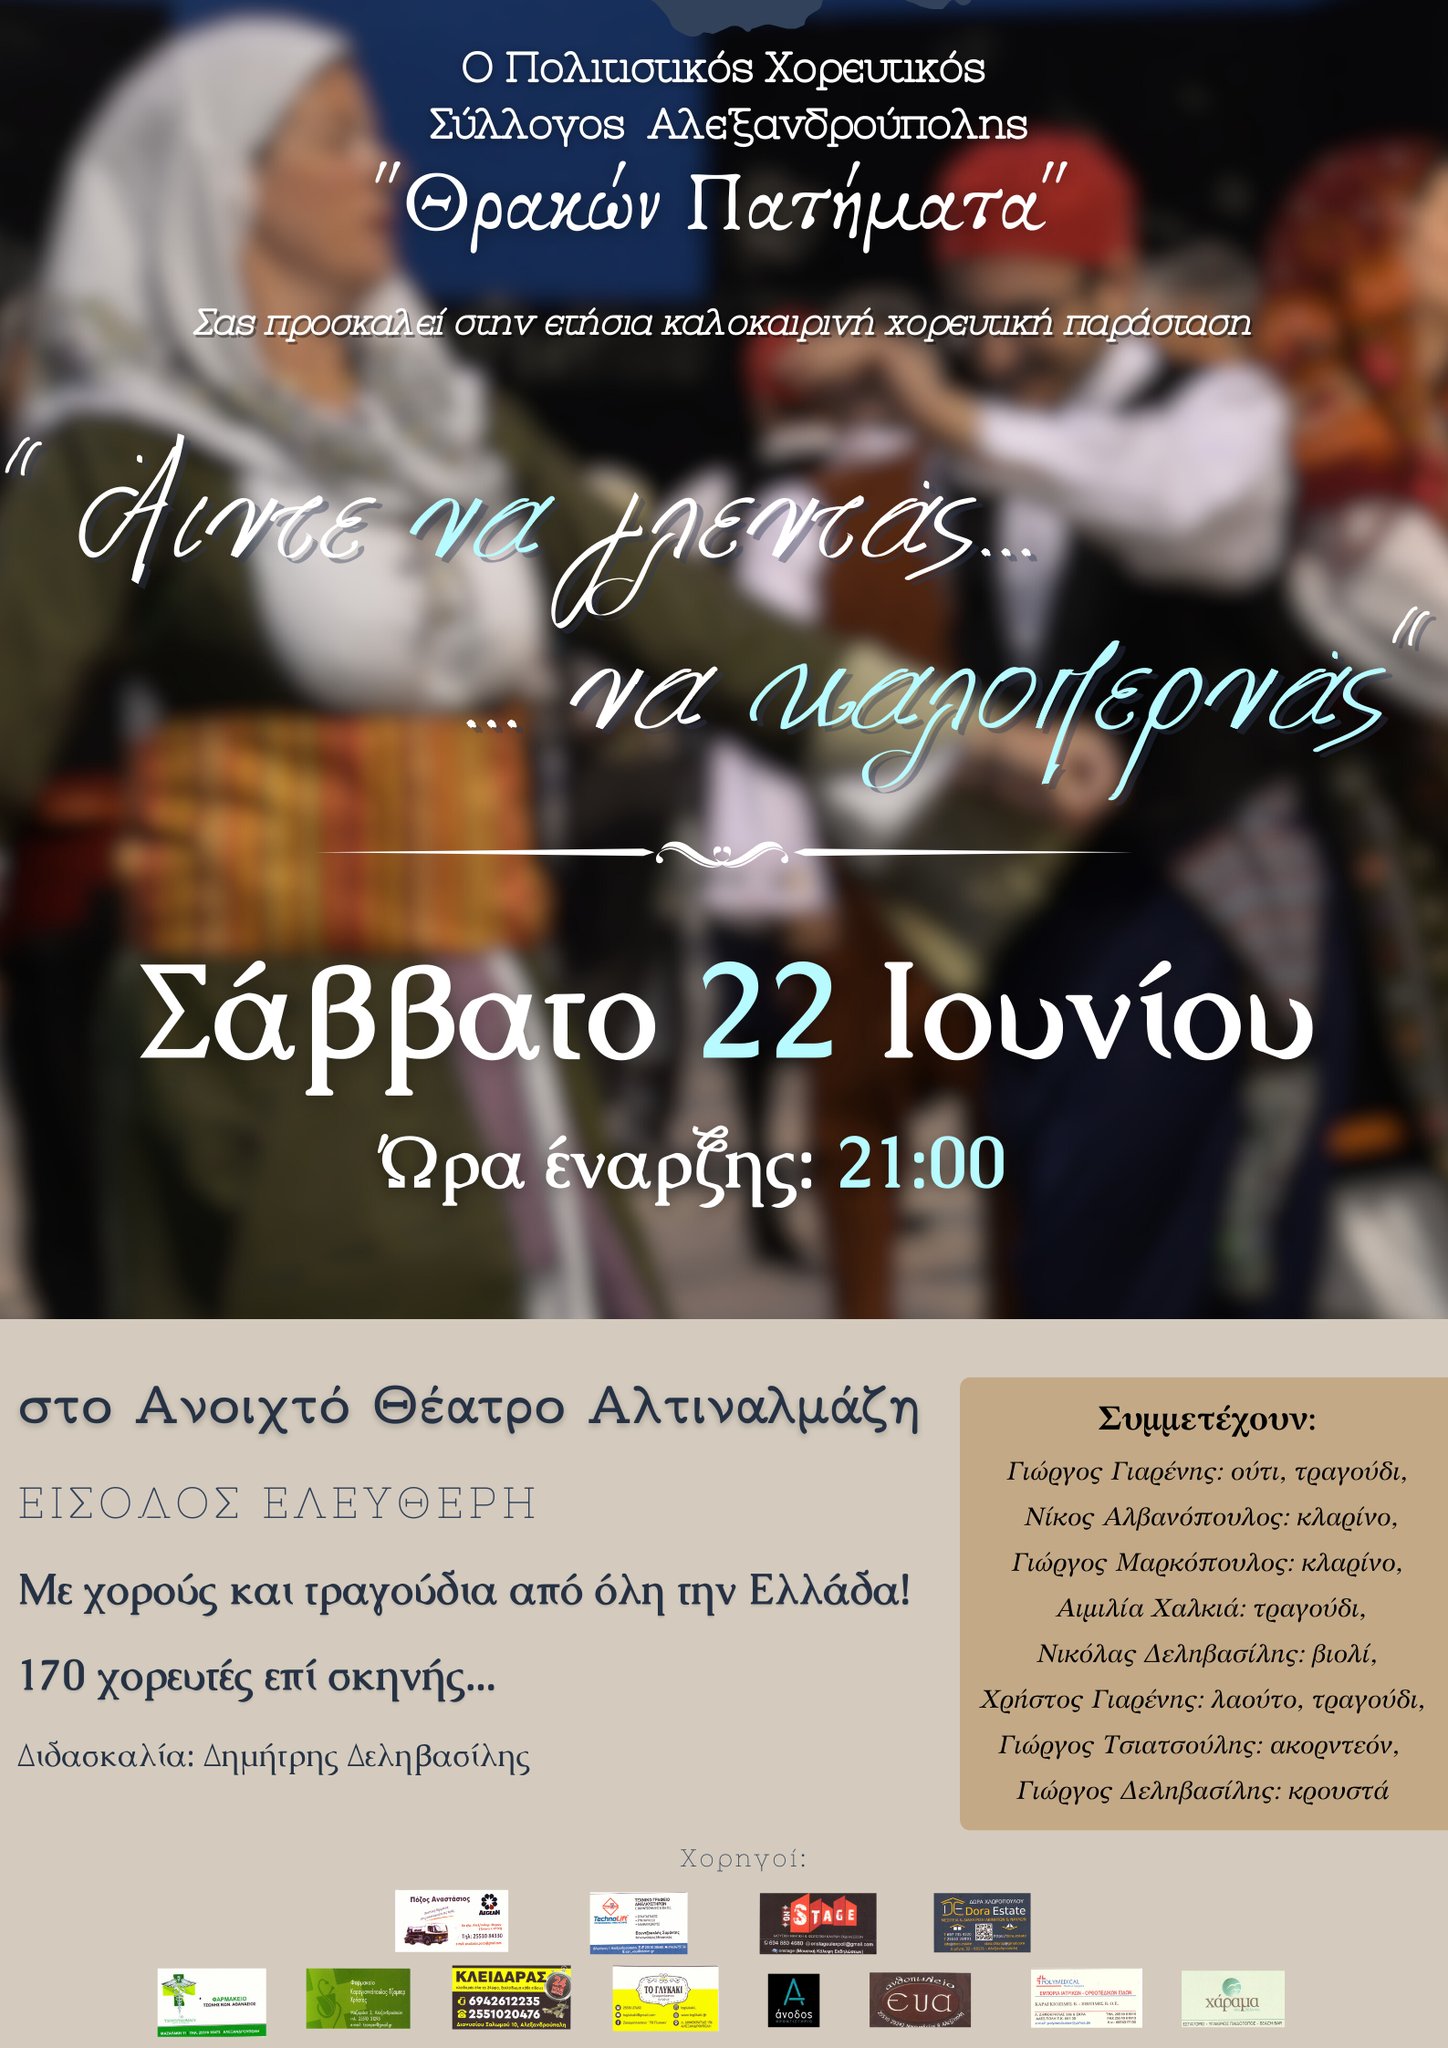 Μουσικοχορευτική παράσταση από τον Πολιτιστικό Χορευτικό Σύλλογο Αλεξανδρούπολης «Θρακών Πατήματα»